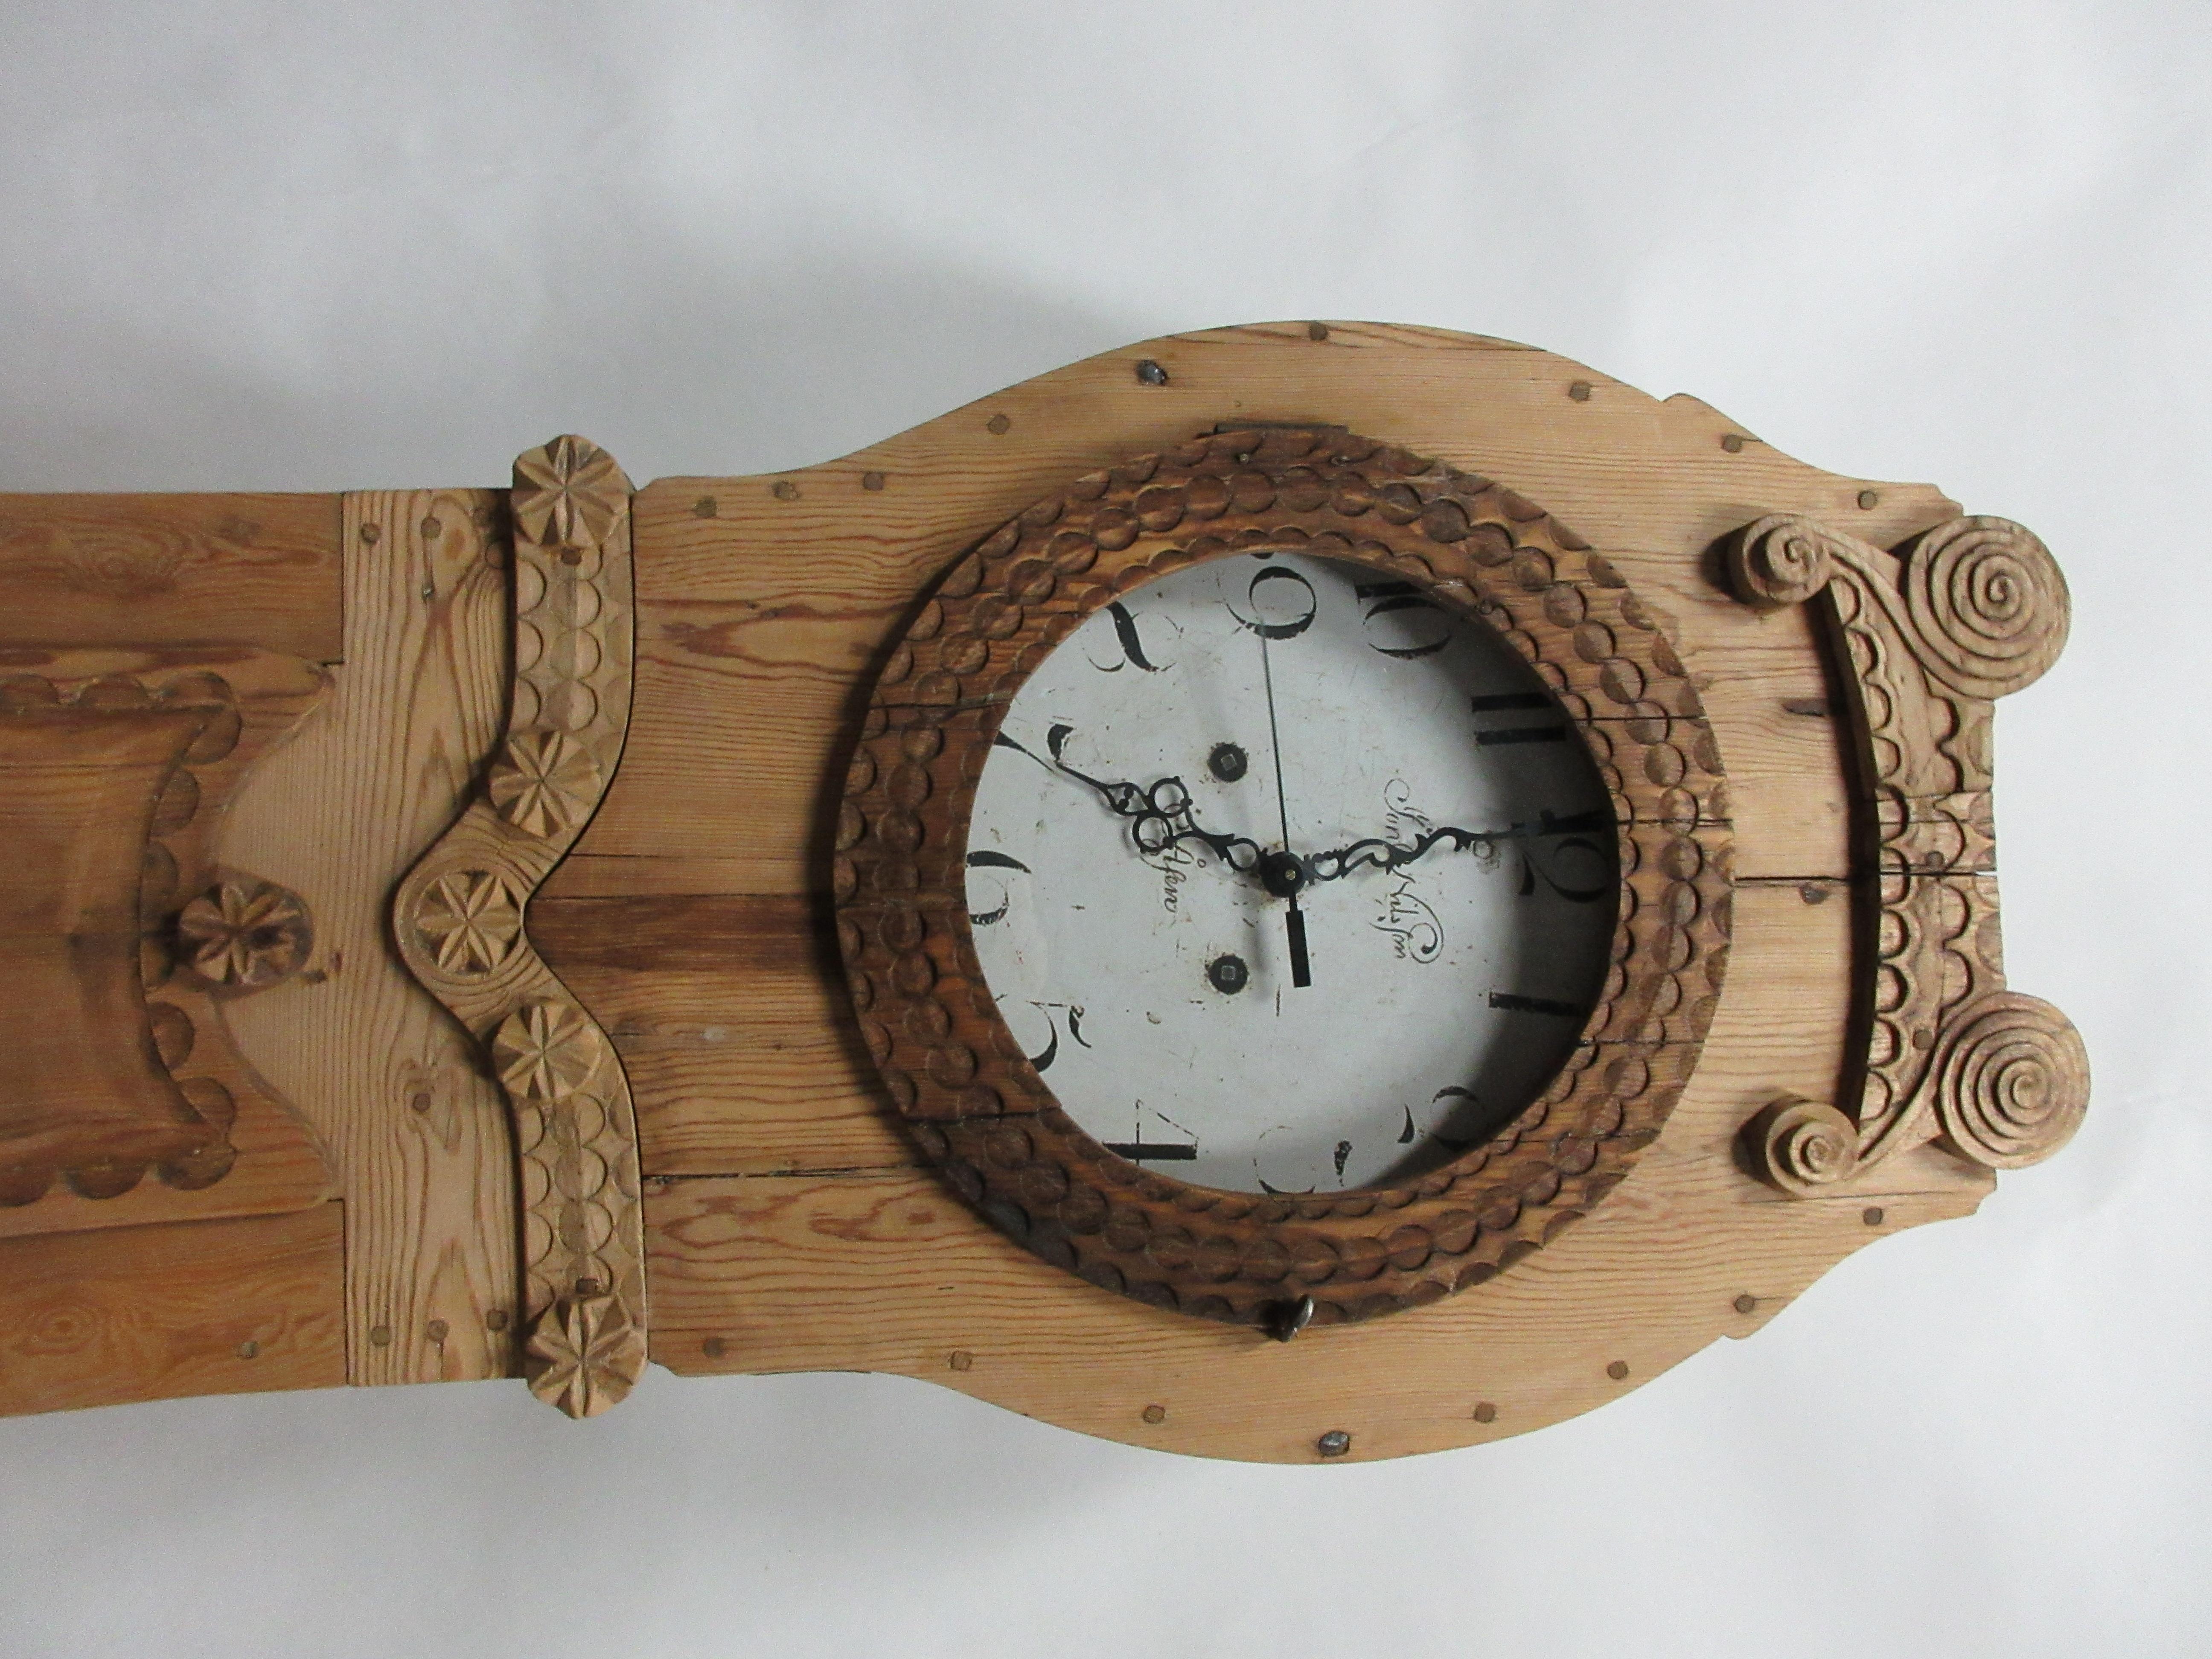 Il s'agit d'une horloge suédoise Mora en finition naturelle.  les anciens ouvrages ont été enlevés et remplacés par de nouveaux ouvrages d'horlogerie à batterie.  les œuvres originales sont offertes avec chaque horloge. 